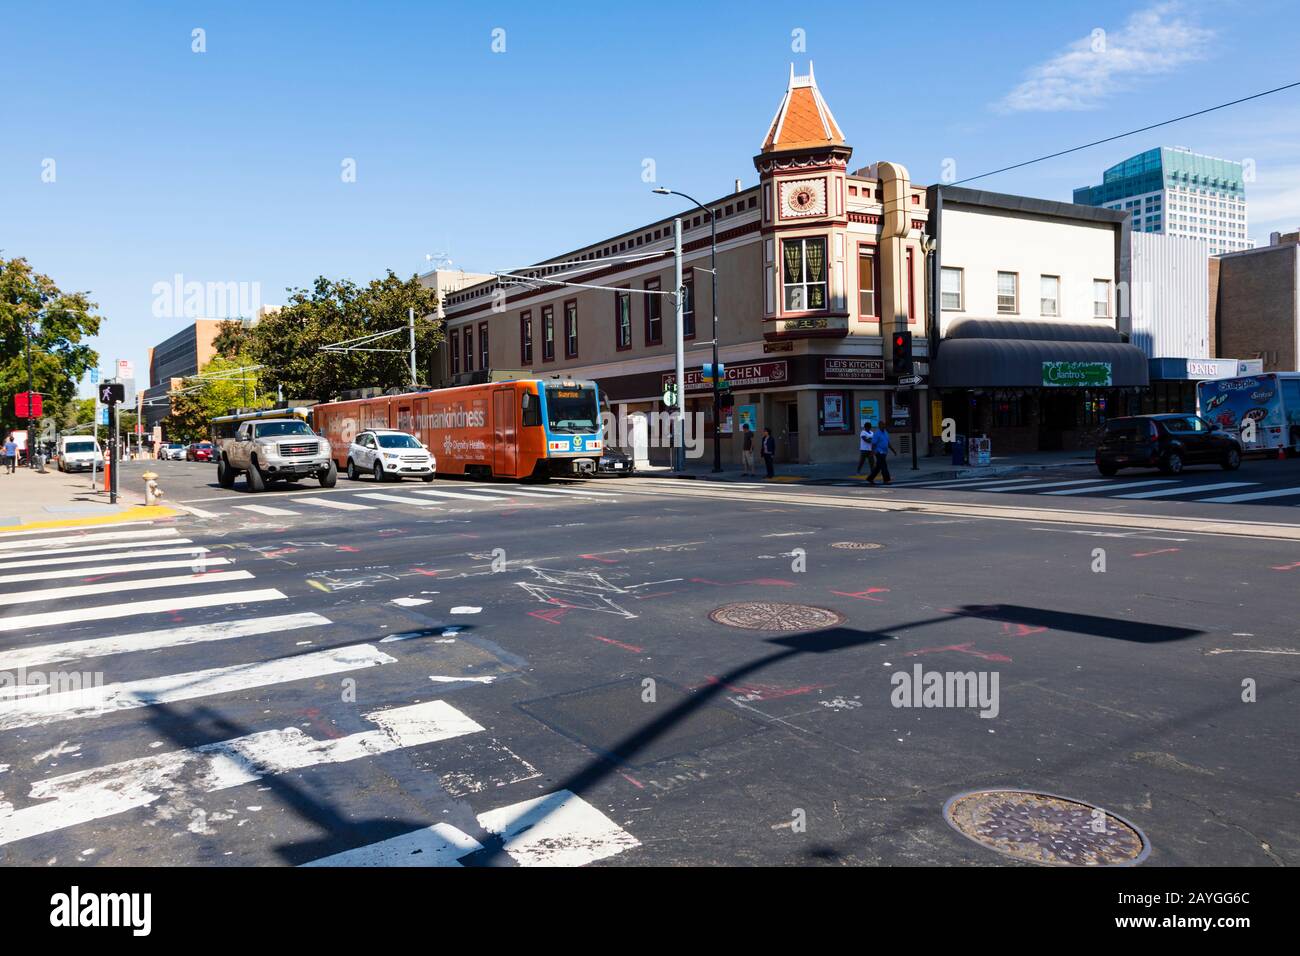 Kreuzung von J Street und 7th Street, gegenüber dem Sullivan Building. Sacramento, Kalifornien, USA. Verkehr und Straßenbahnen warten auf Überfahrt. Stockfoto